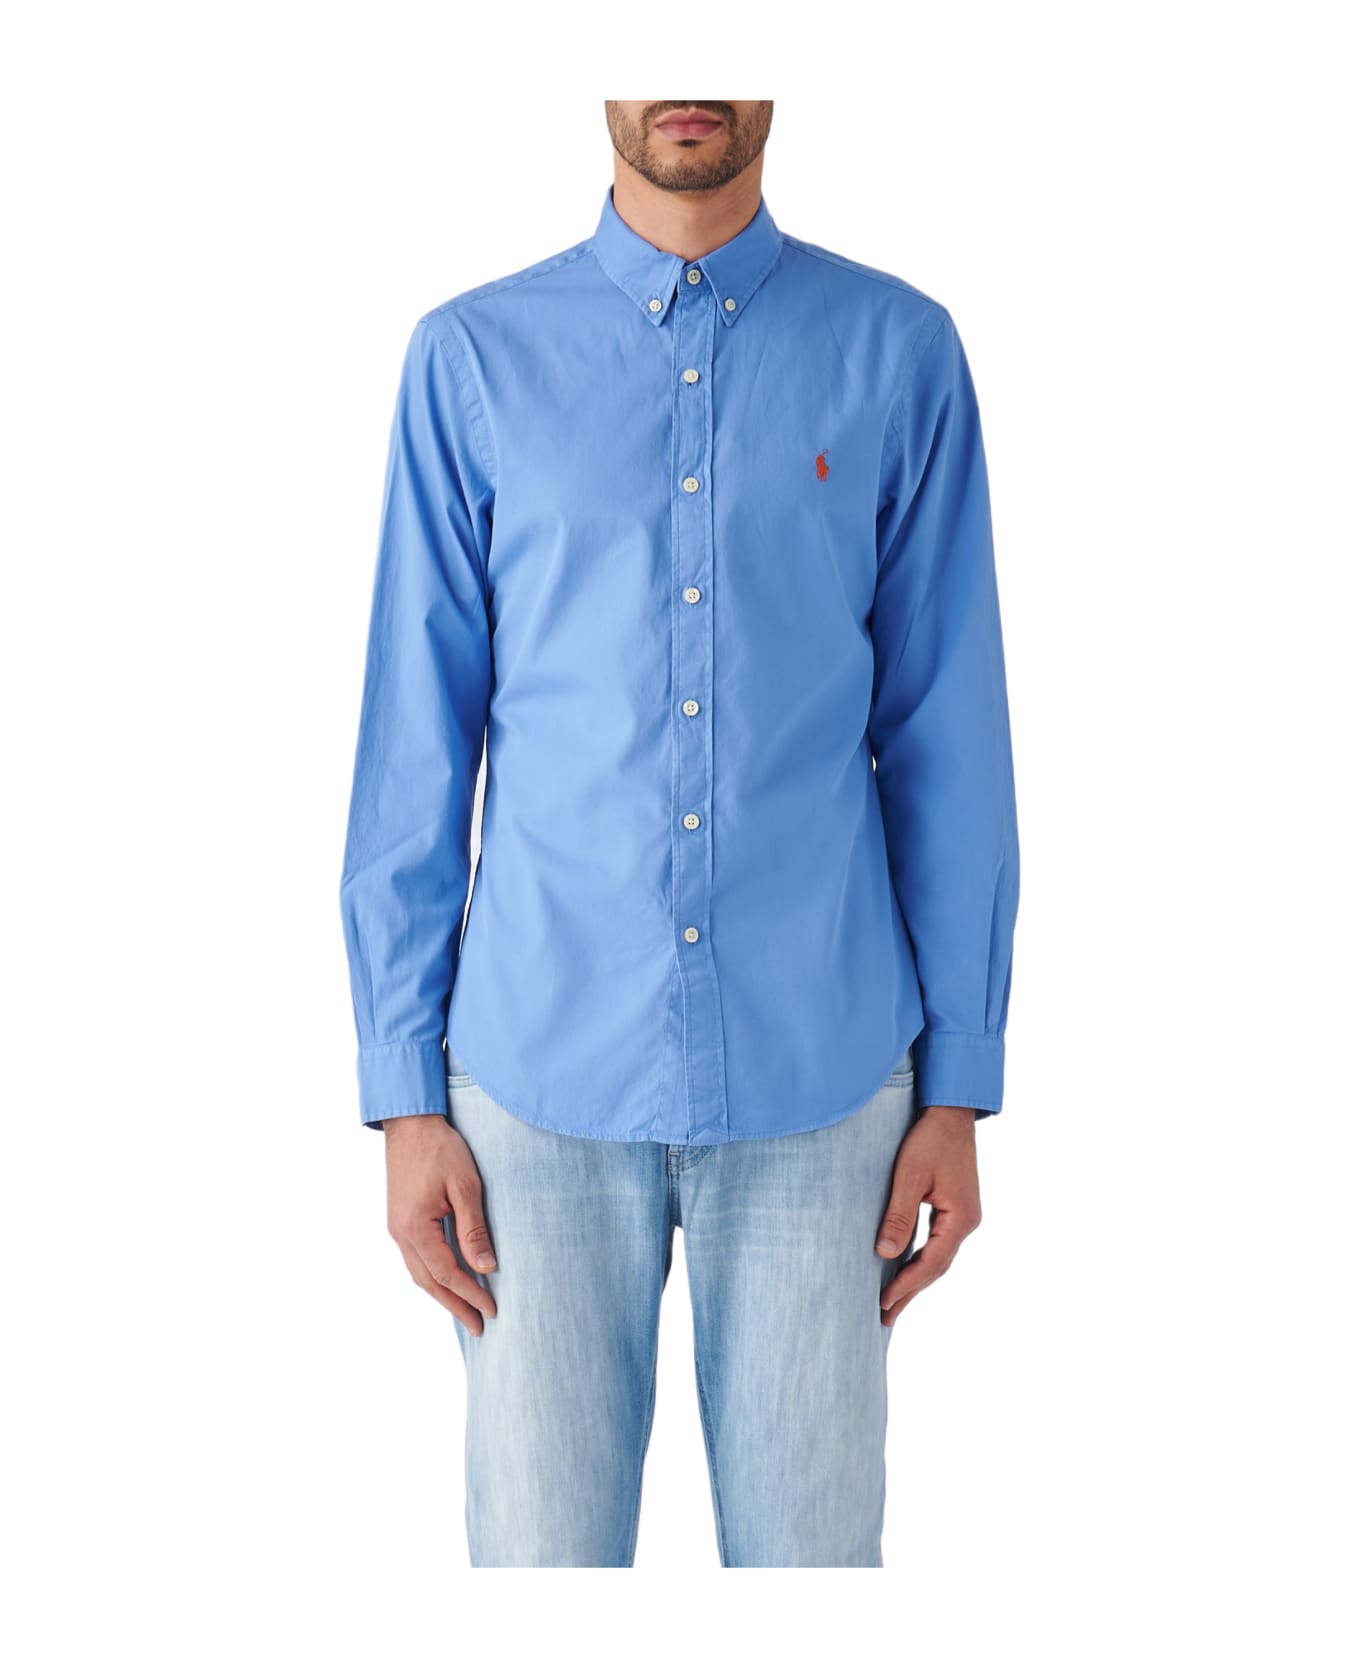 Polo Ralph Lauren Long Sleeve Sport Shirt Shirt - Blue シャツ